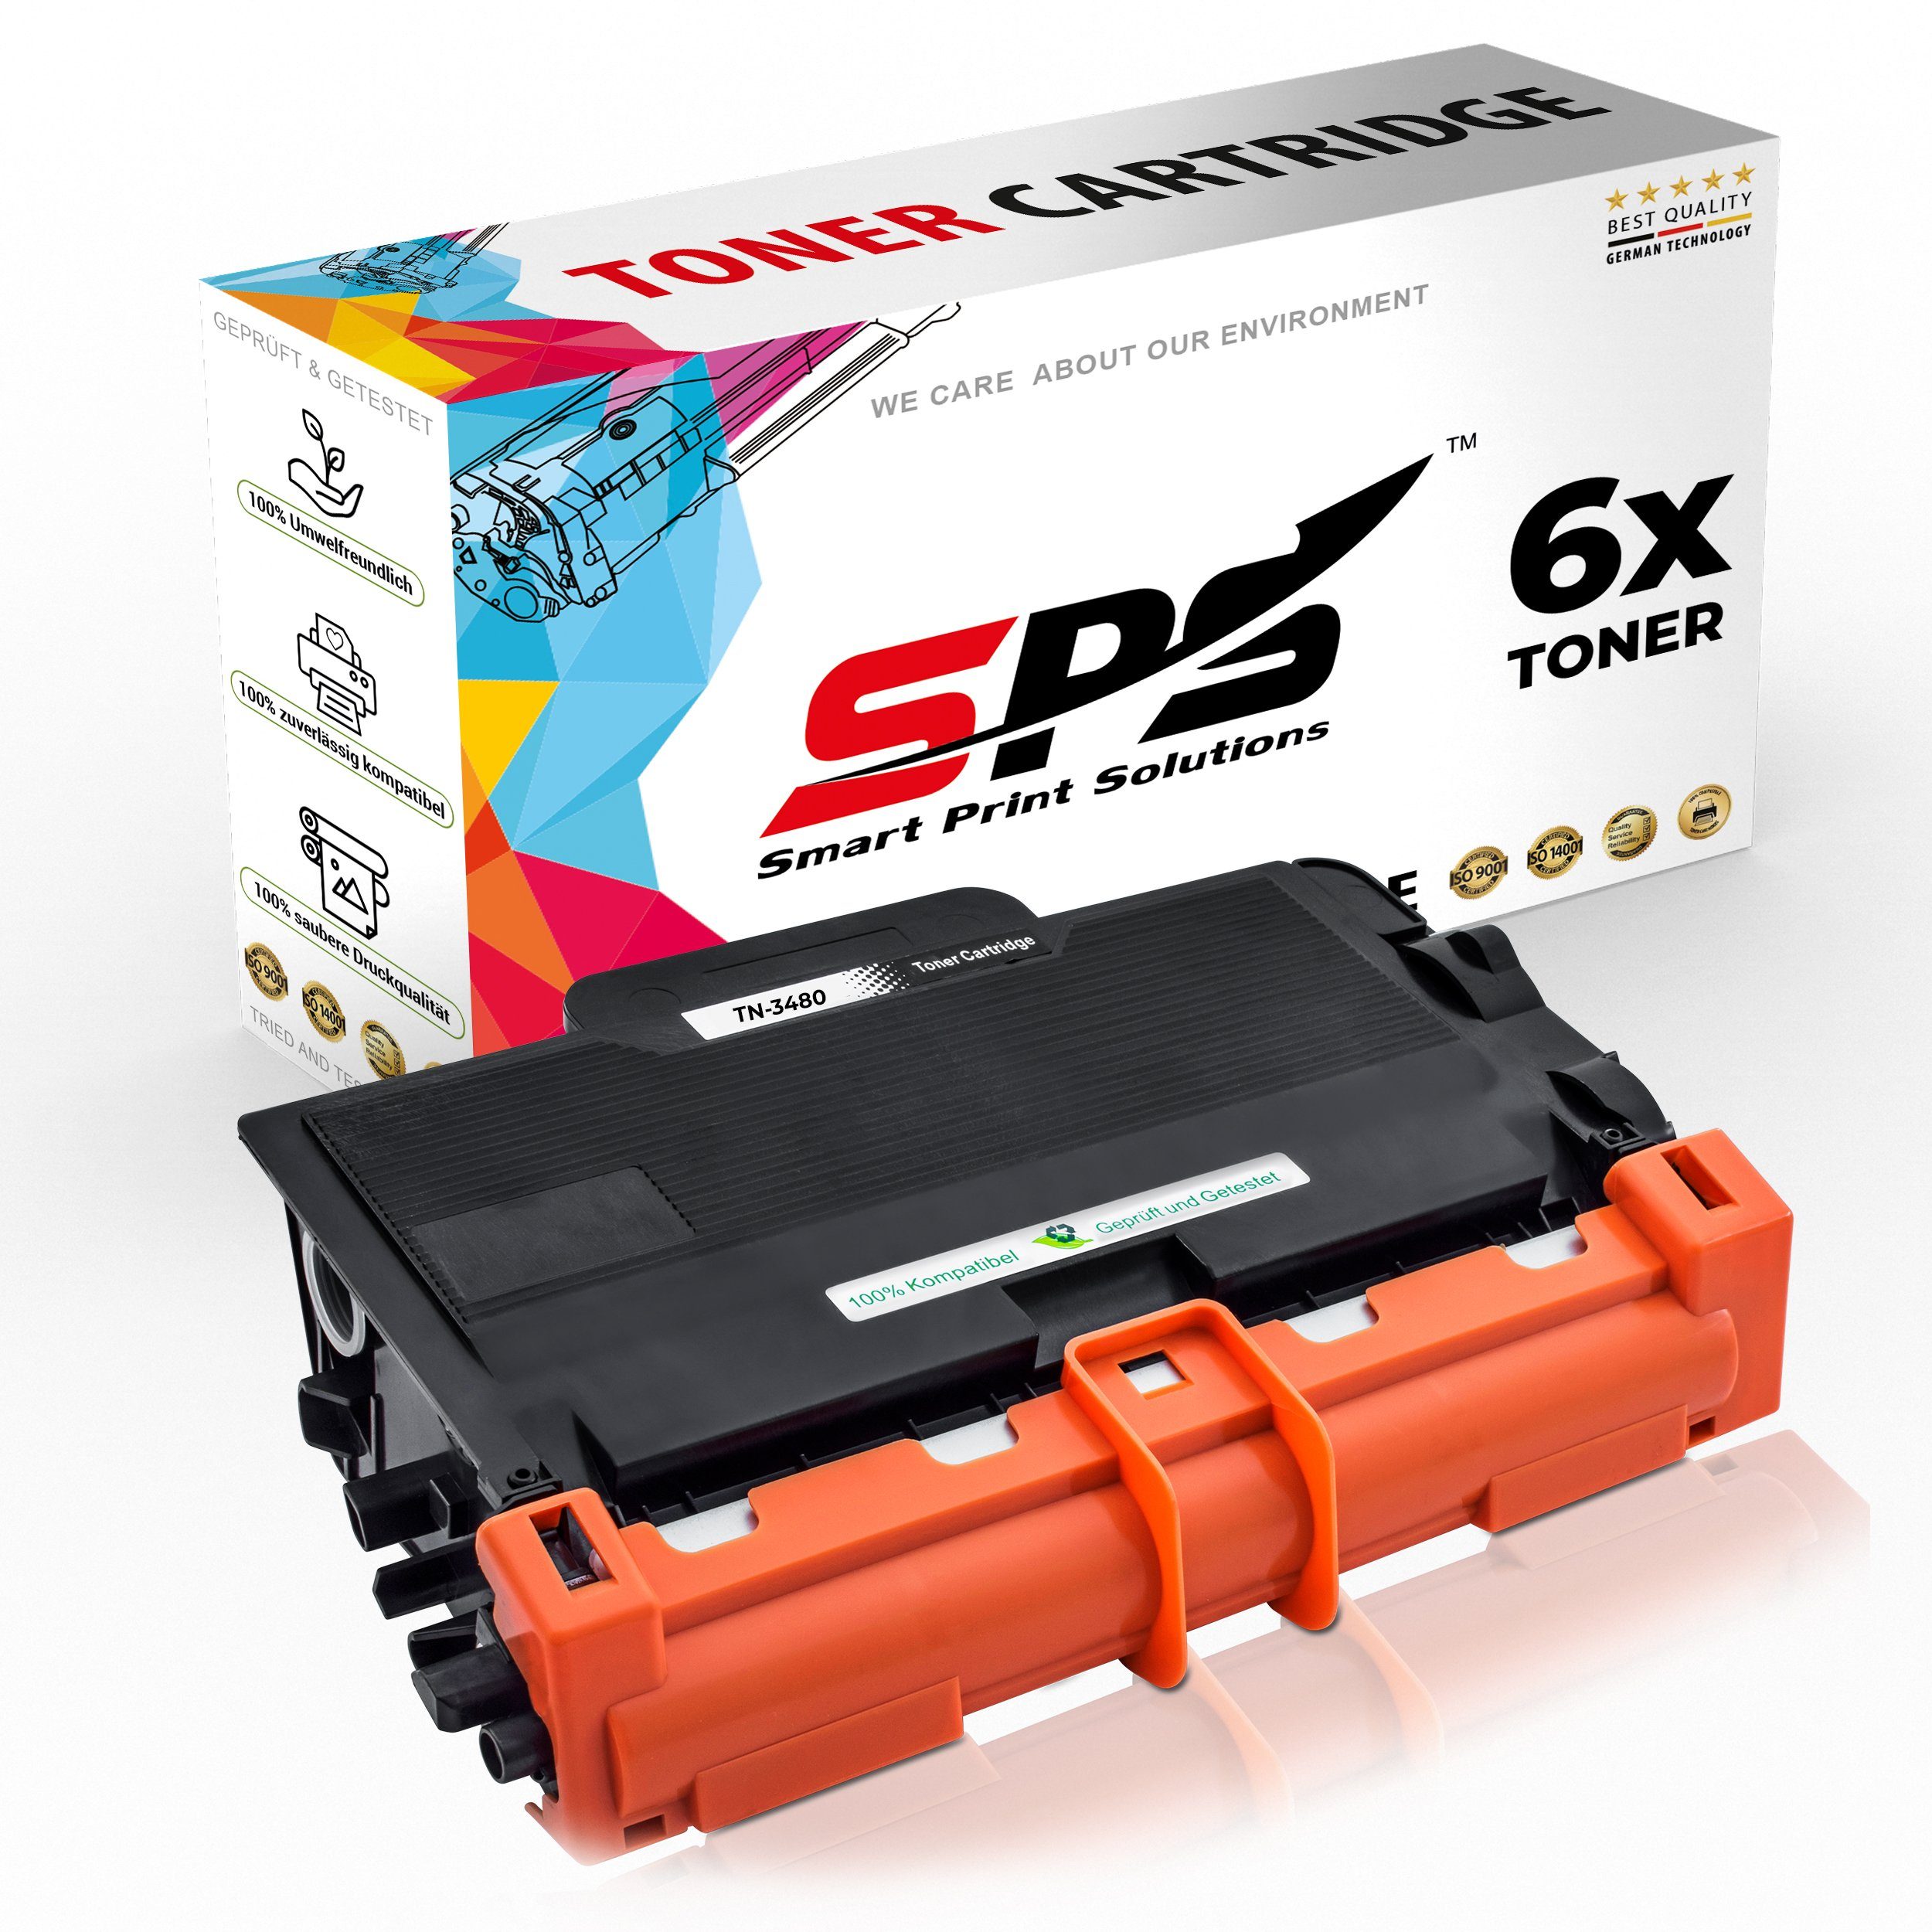 SPS Tonerkartusche Kompatibel für Brother HL-L6250 TN-3430, (6er Pack)